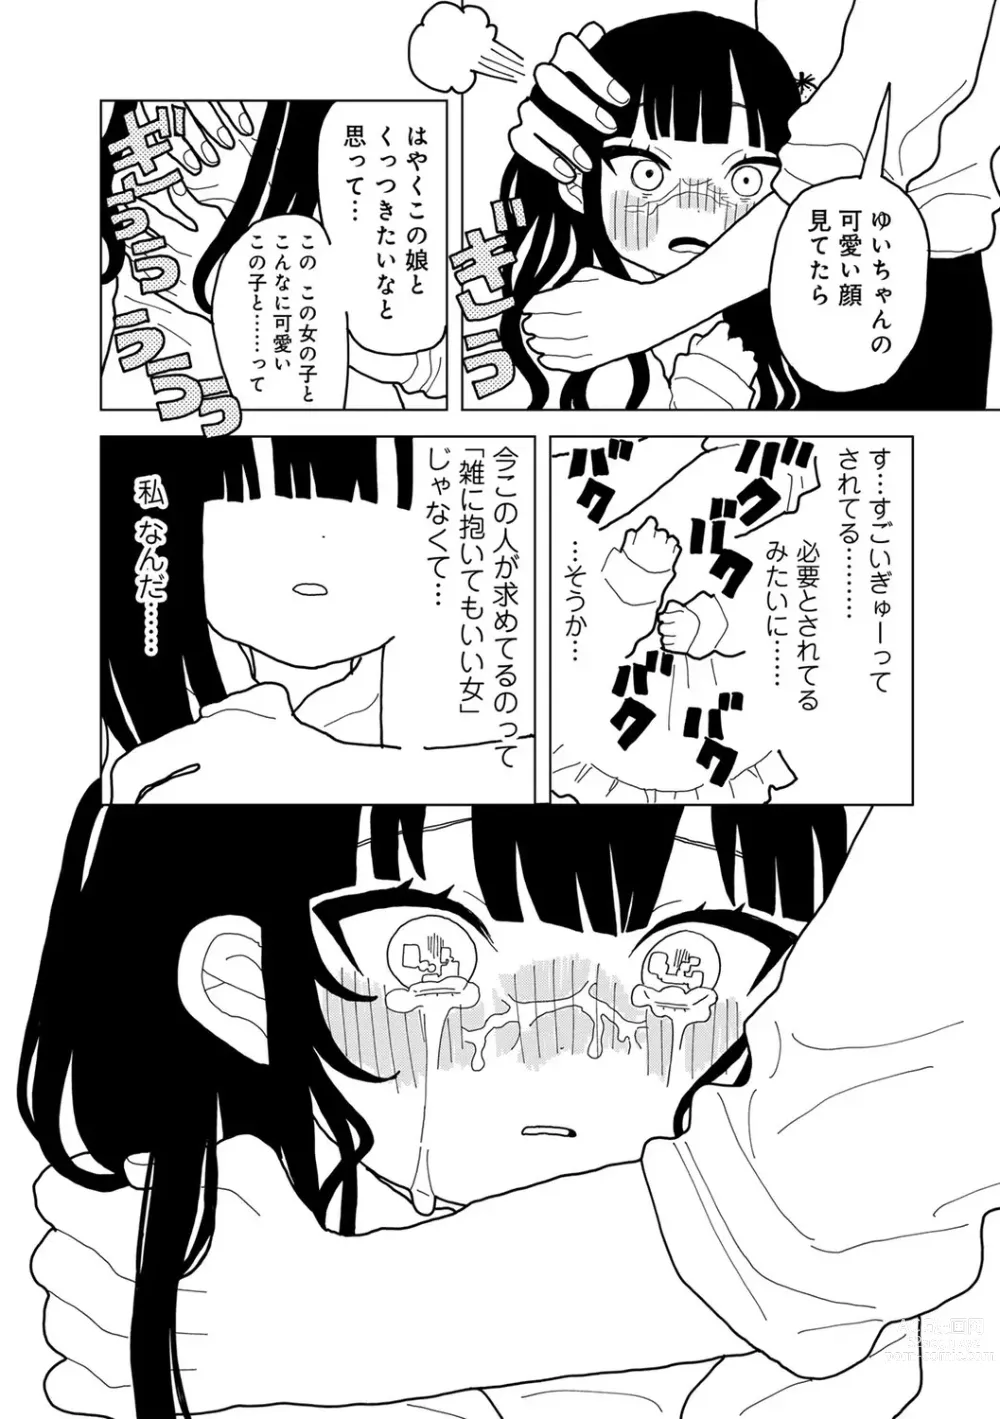 Page 183 of manga COMIC kisshug vol.3